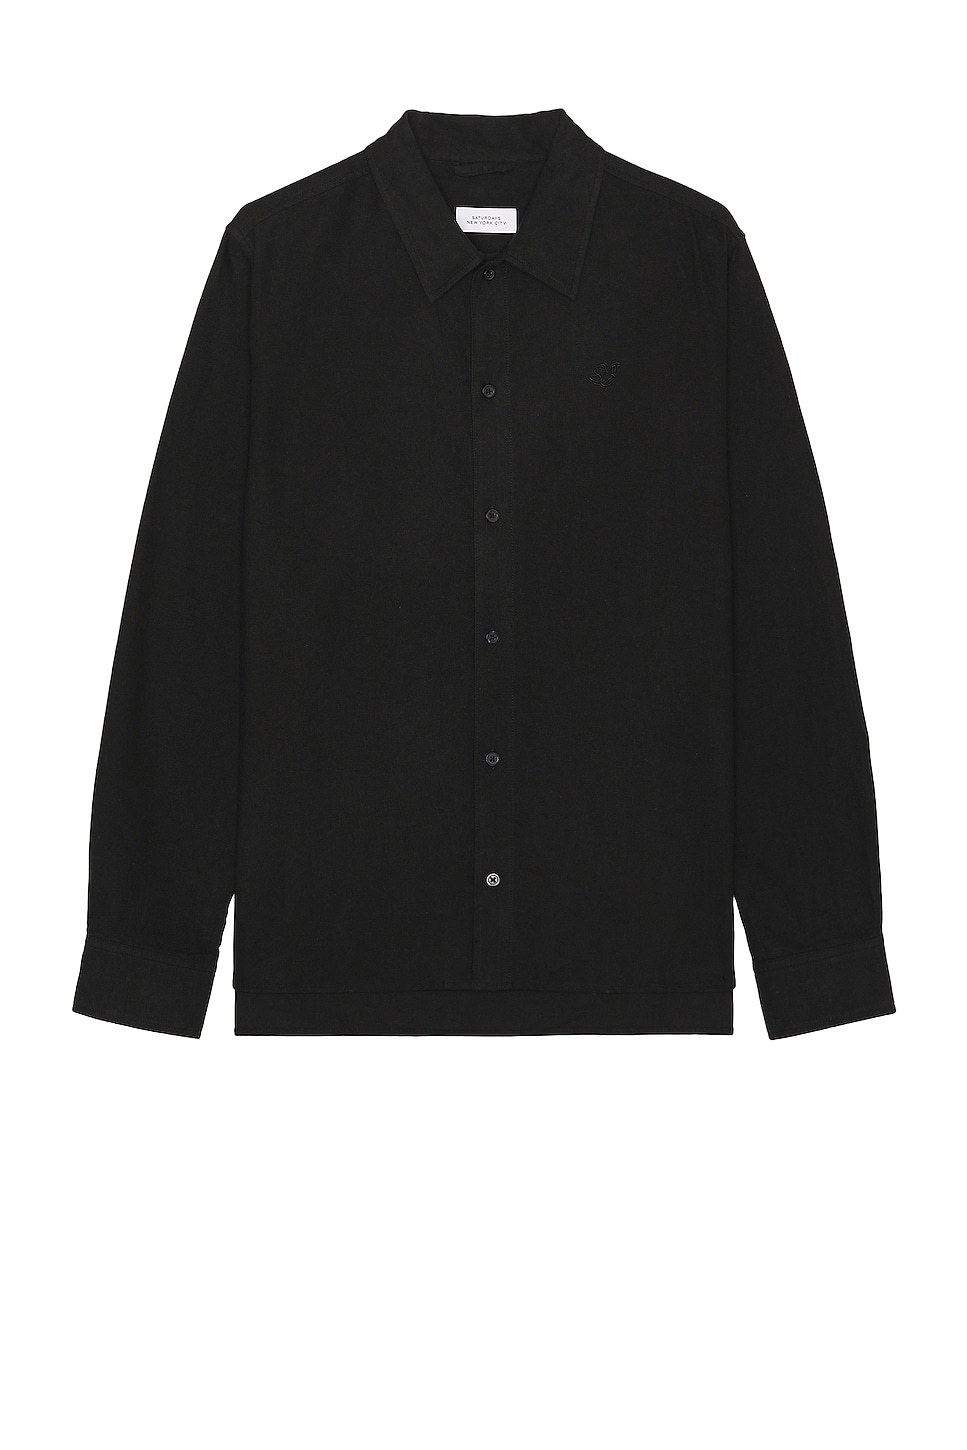 Рубашка SATURDAYS NYC Broome Flannel, черный